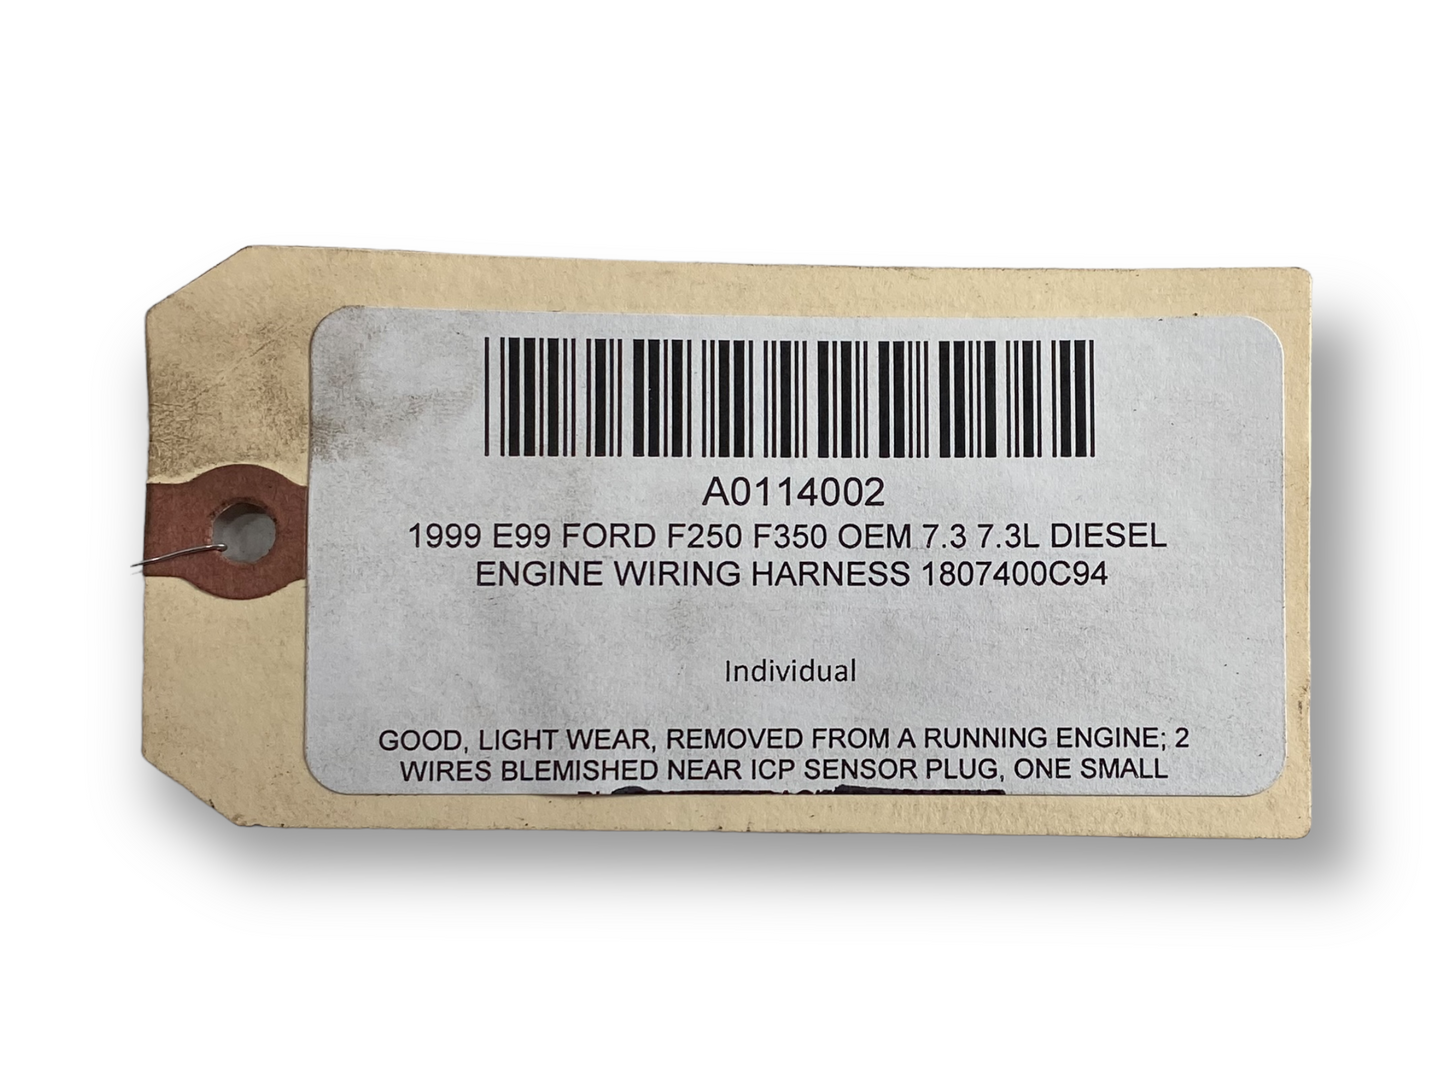 1999 E99 Ford F250 F350 OEM 7.3 7.3L Diesel Engine Wiring Harness 1807400C94